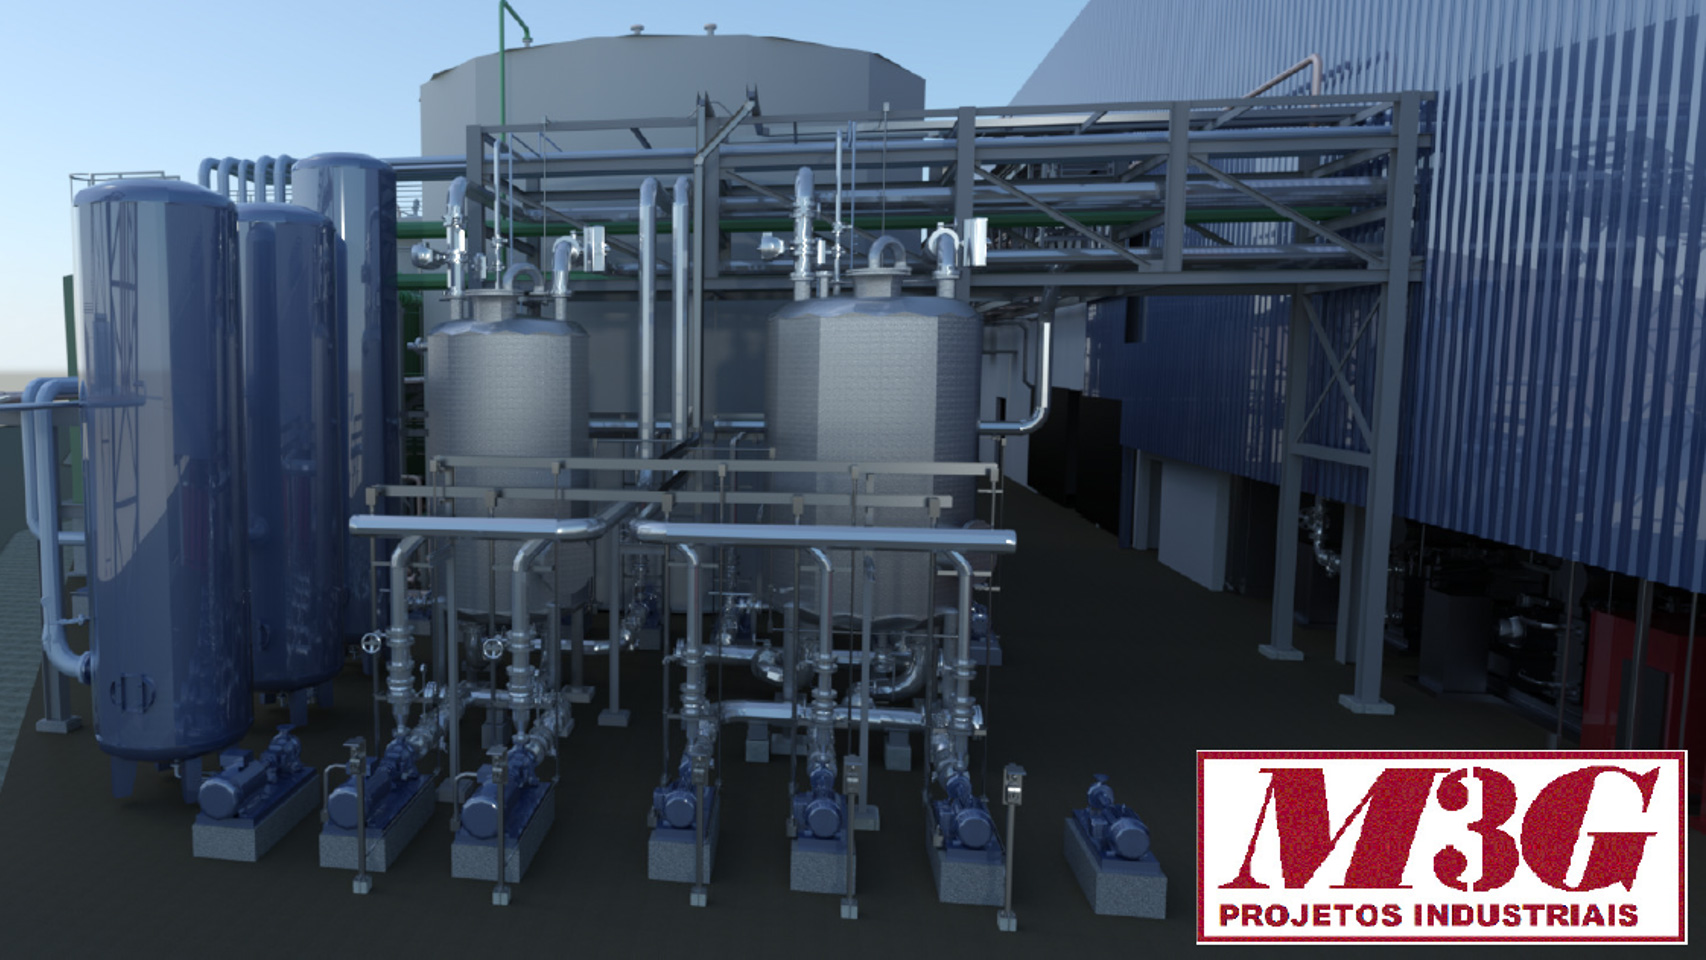 Projeto realizado pela M3G Projetos Industriais com AutoCAD Plant 3D